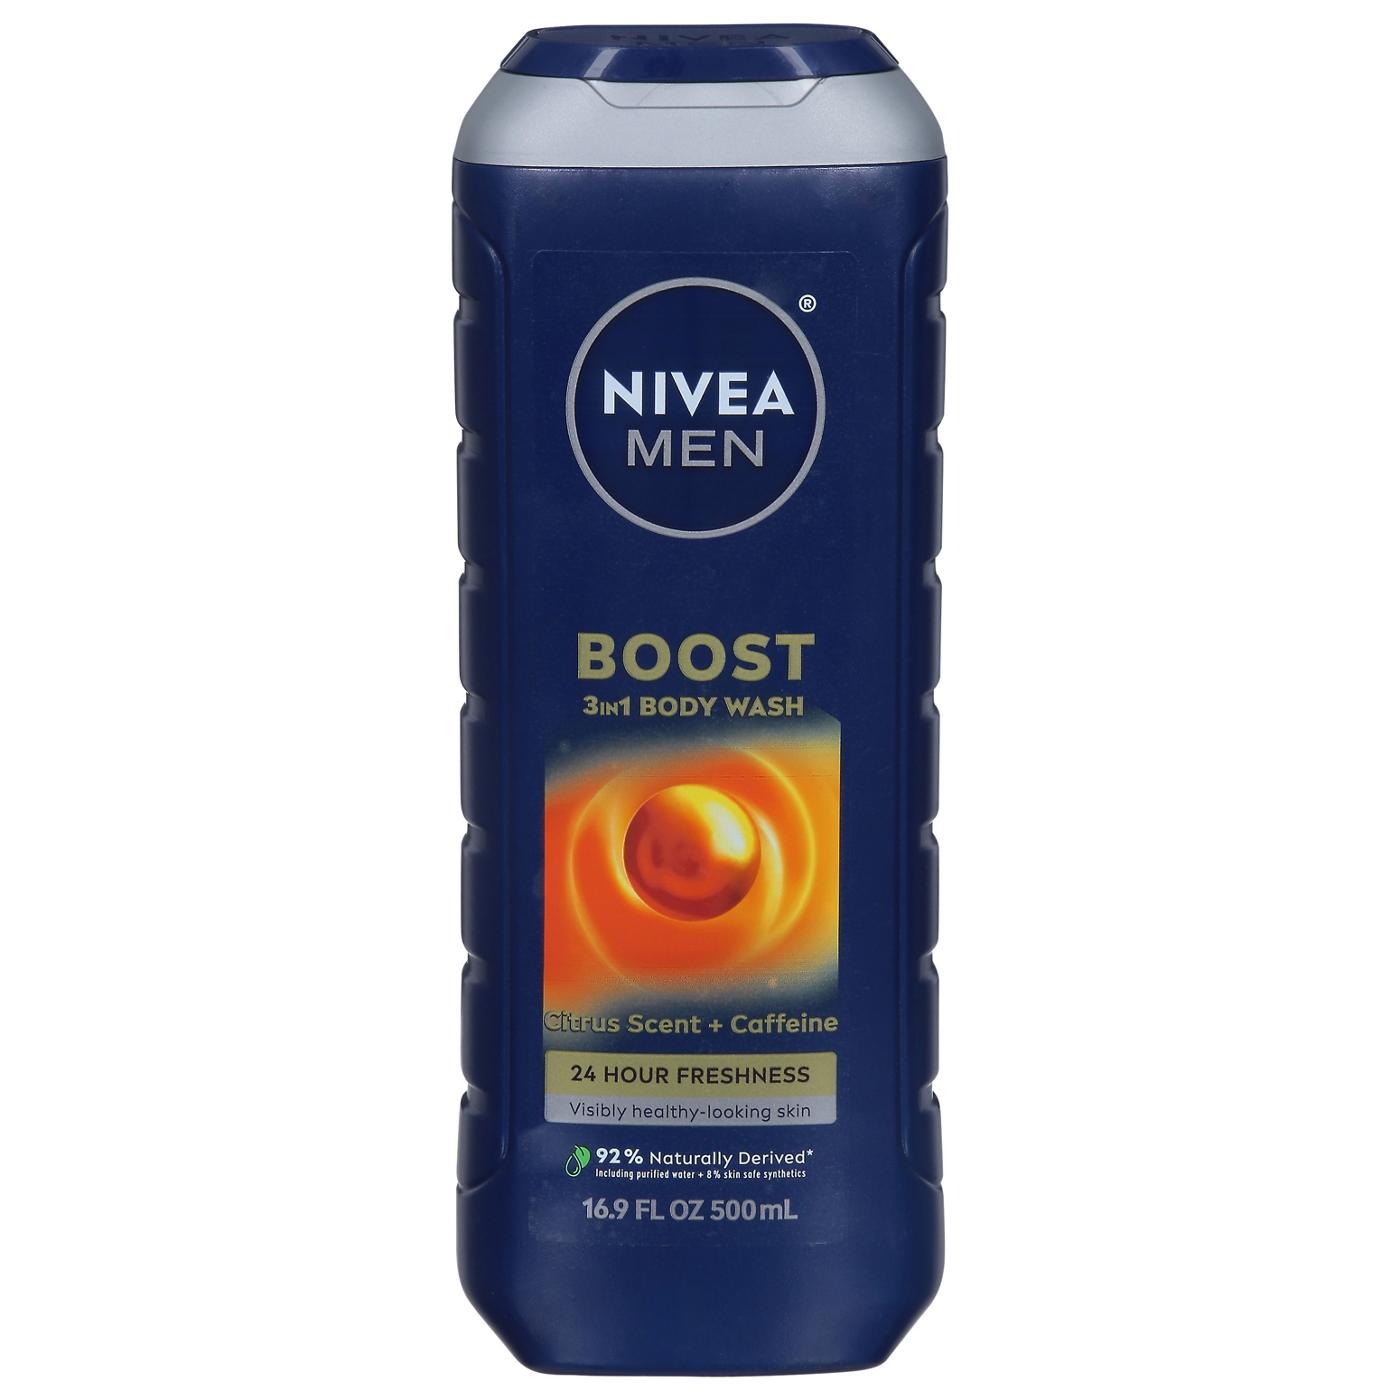 NIVEA Men Boost 3-In-1 Body Wash -Citrus Scent + Caffeine ; image 1 of 2